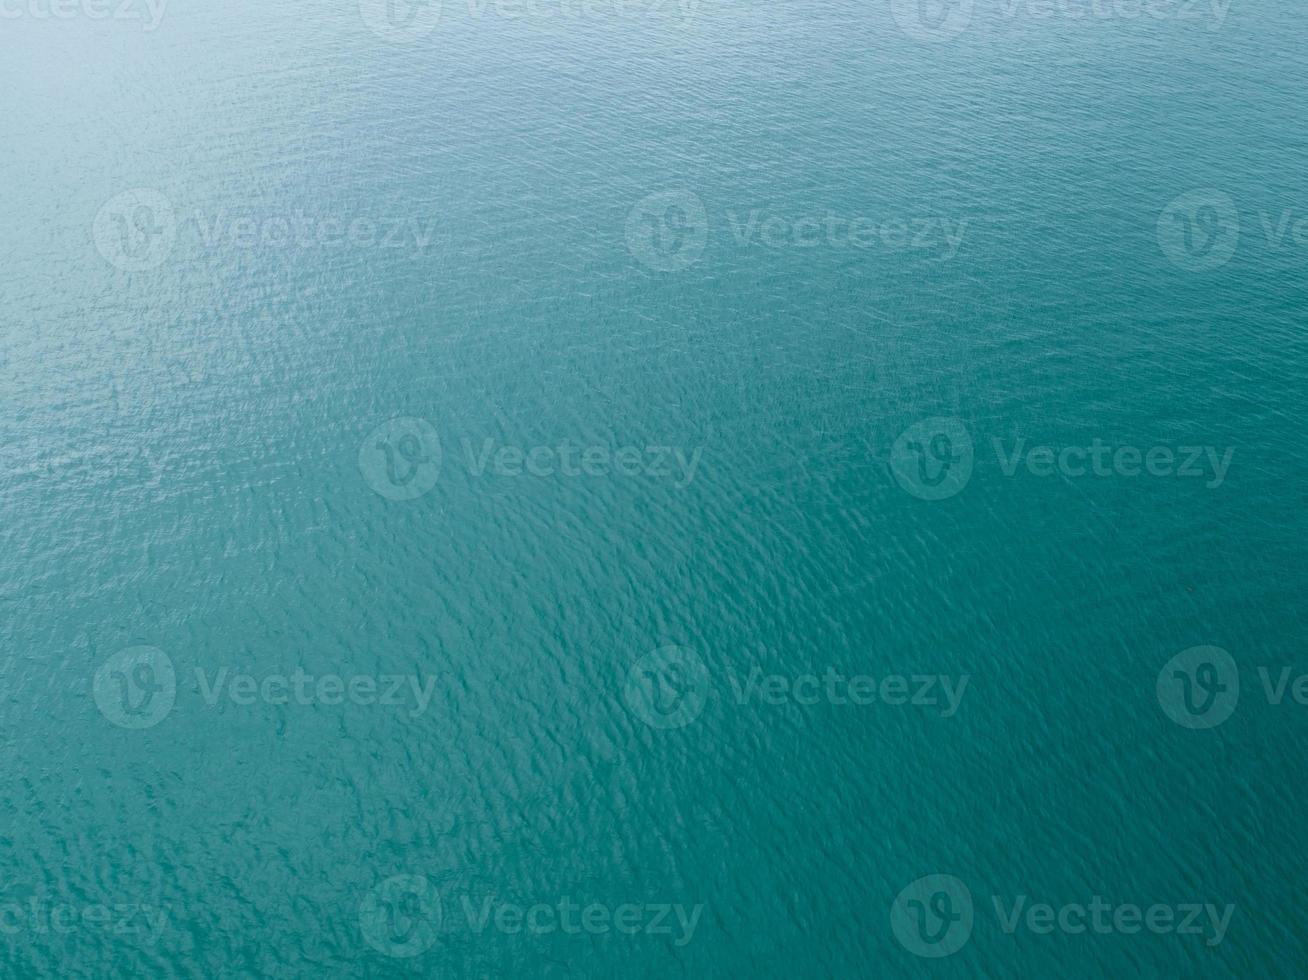 vista aérea da superfície do mar, foto vista aérea de pequenas ondas e textura da superfície da água fundo do mar turquesa bela natureza vista incrível